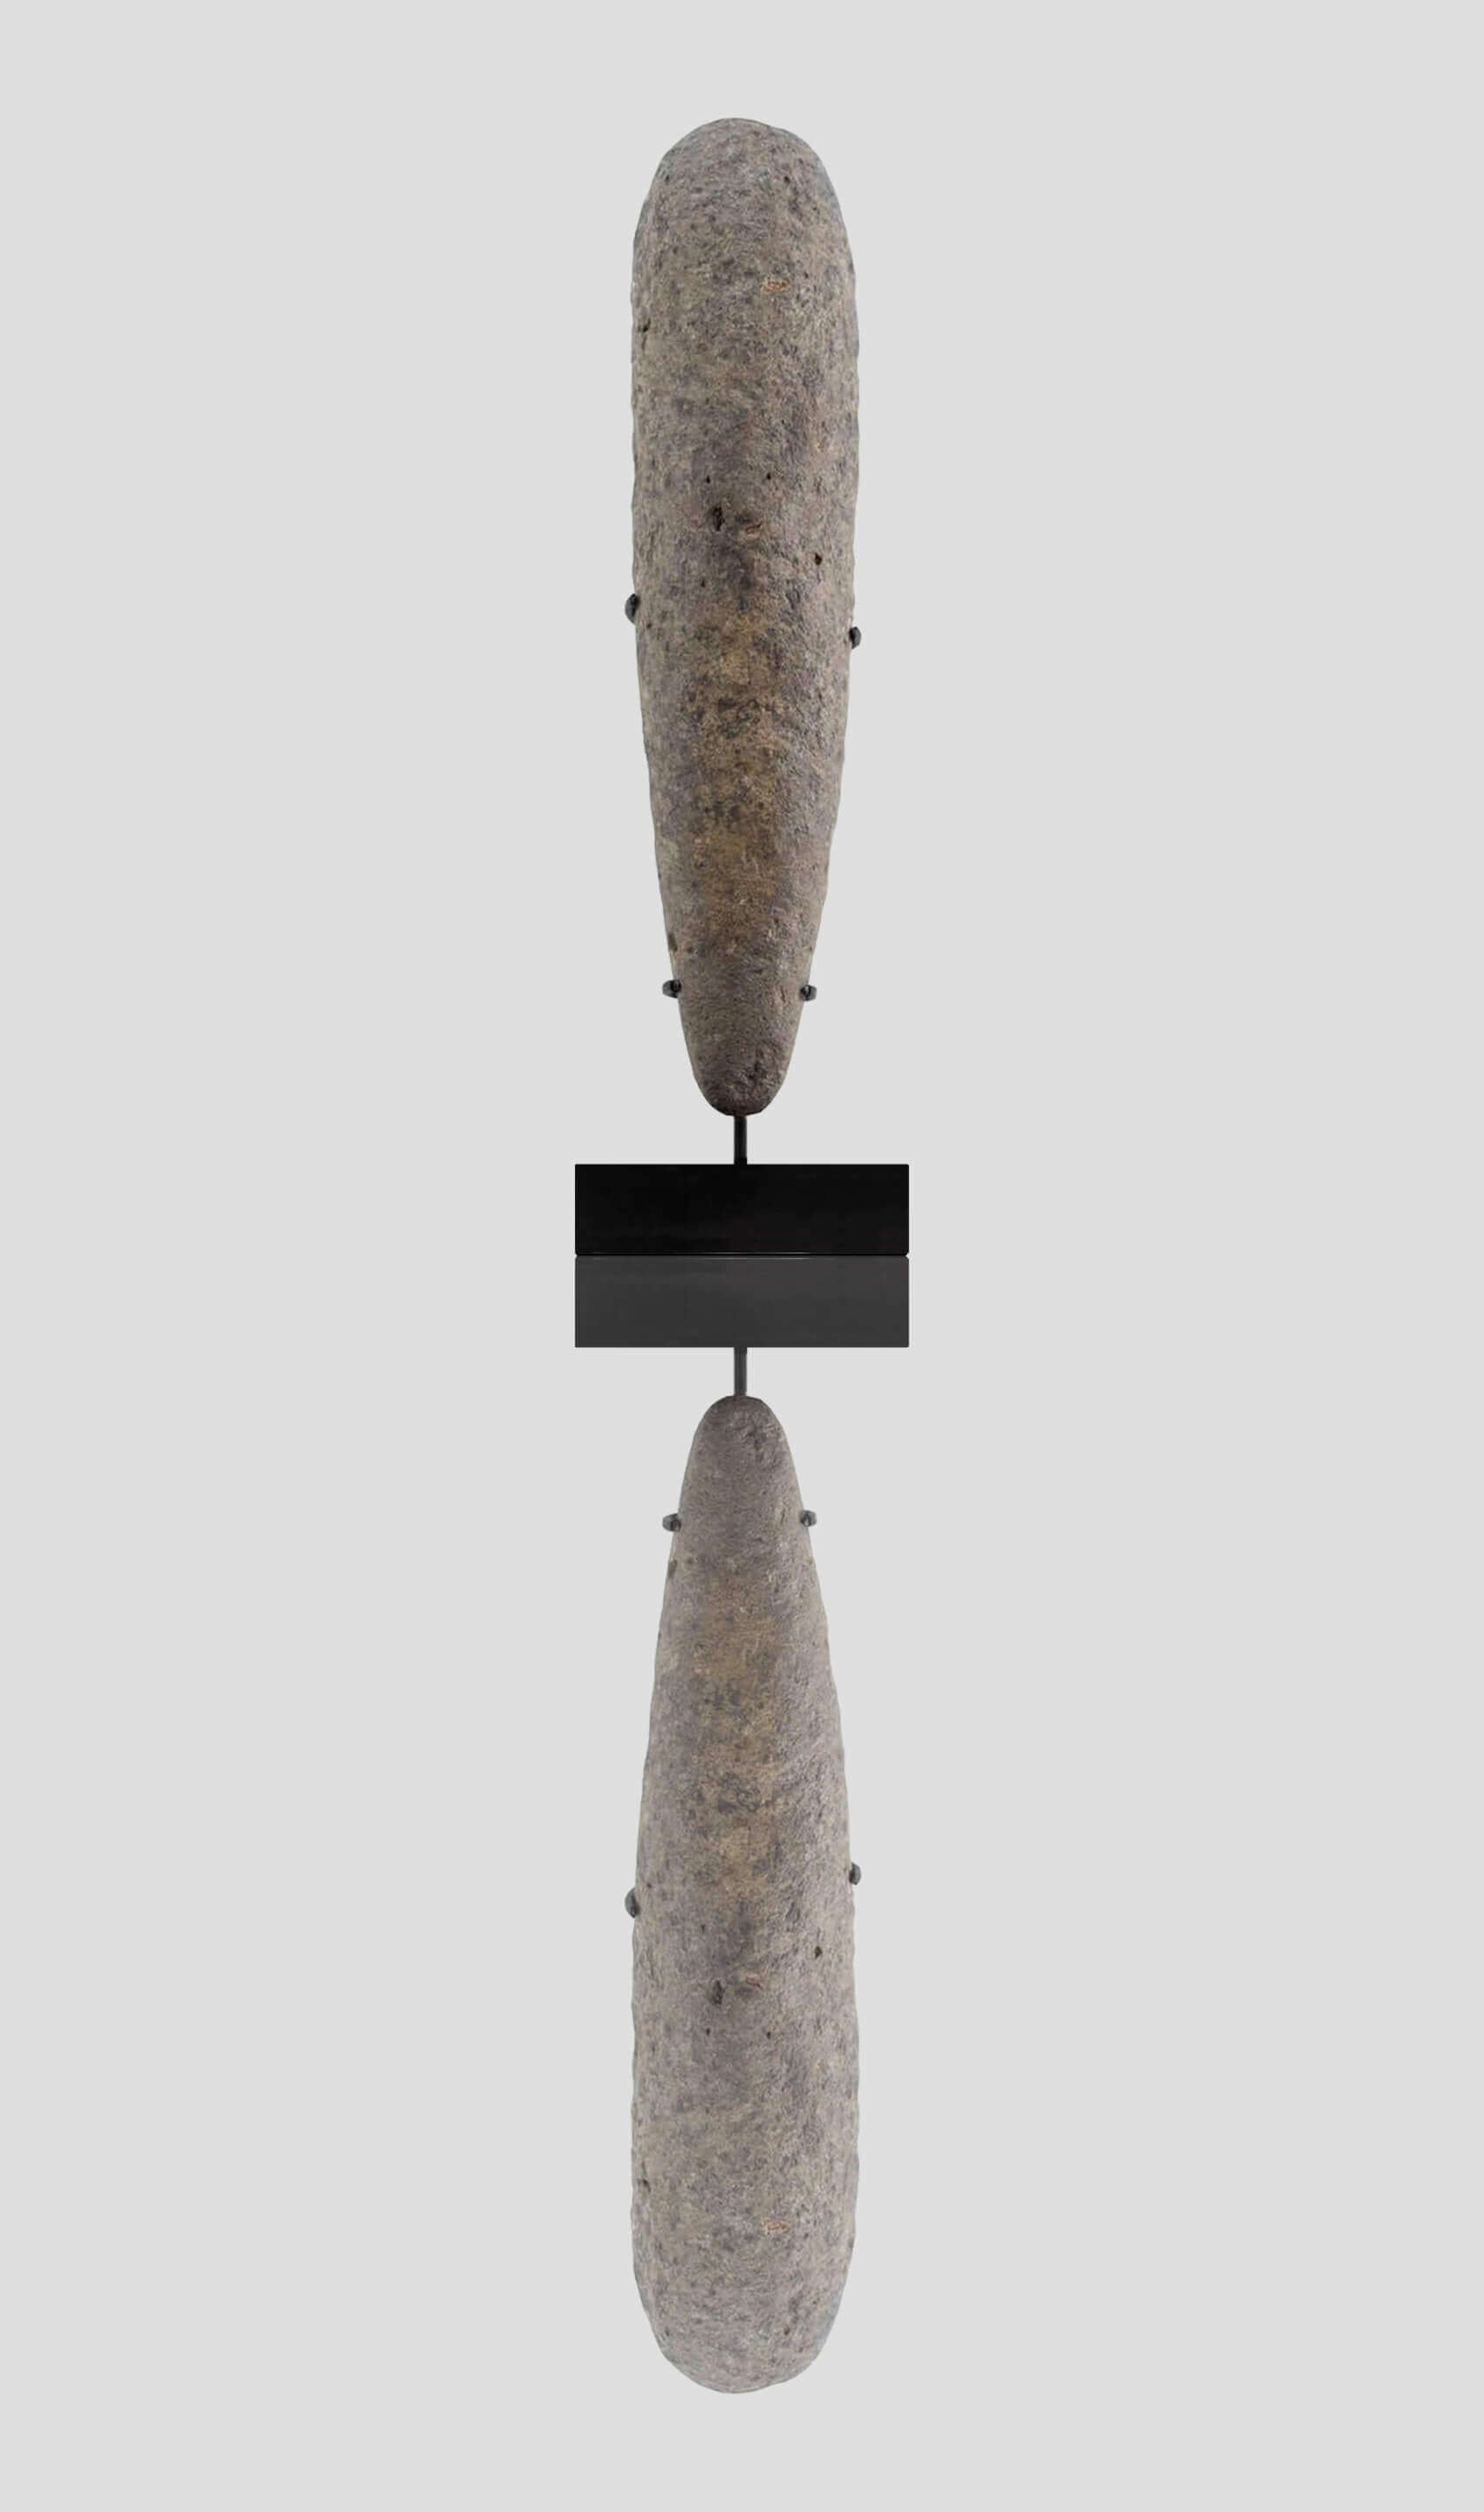 アーティファクト 新石器時代 カプシアン 手杵 [紀元前 8,500 年] 440mm